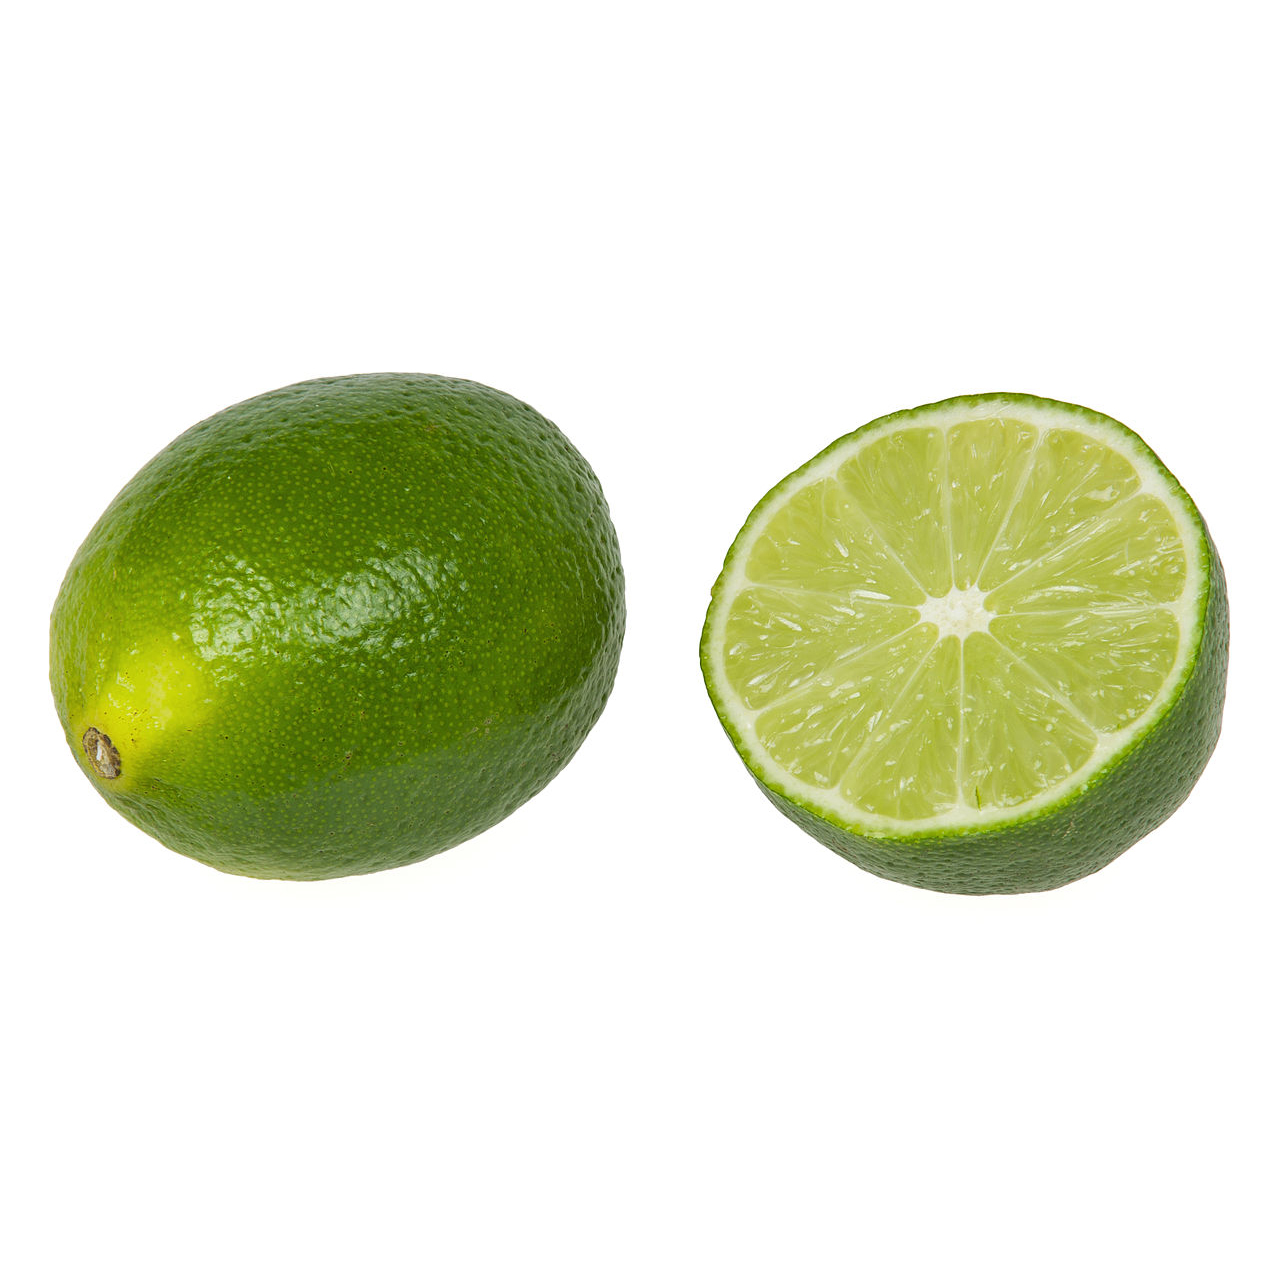 Limes 300g - AUS*